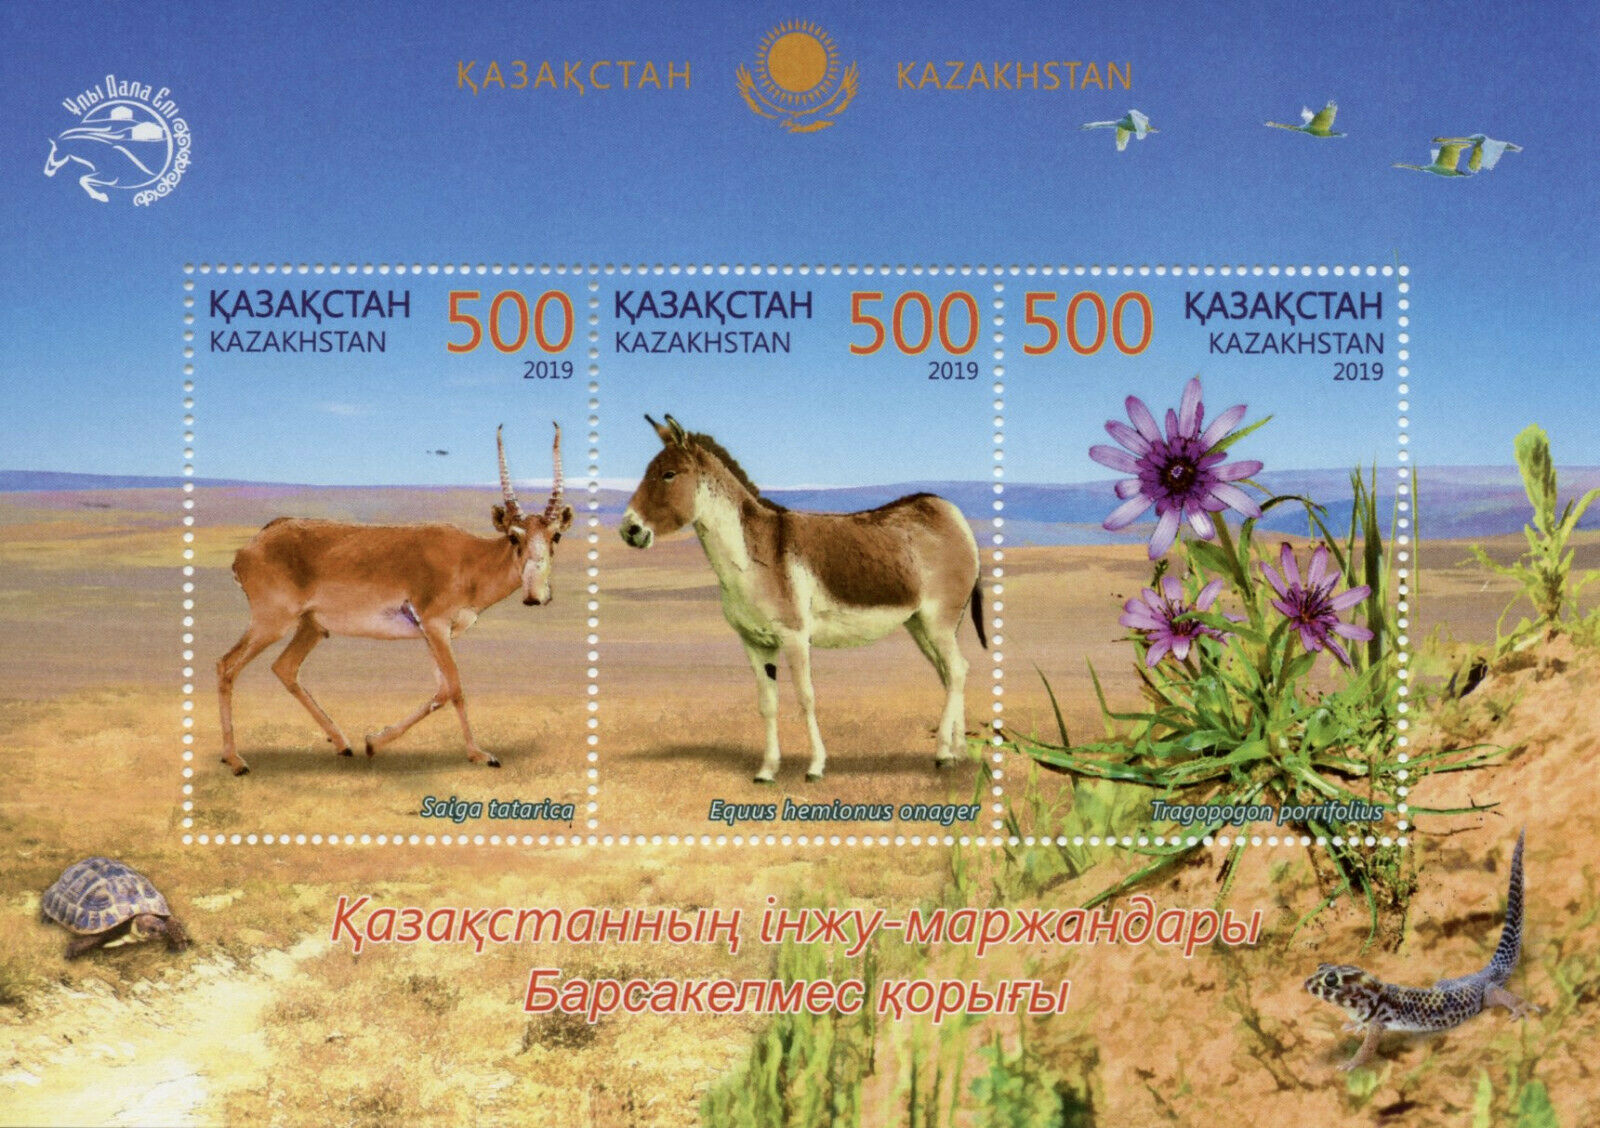 Kazakhstan Wild Animals Stamps 2019 MNH Barsakelmes Nature Reserve Flora 3v M/S